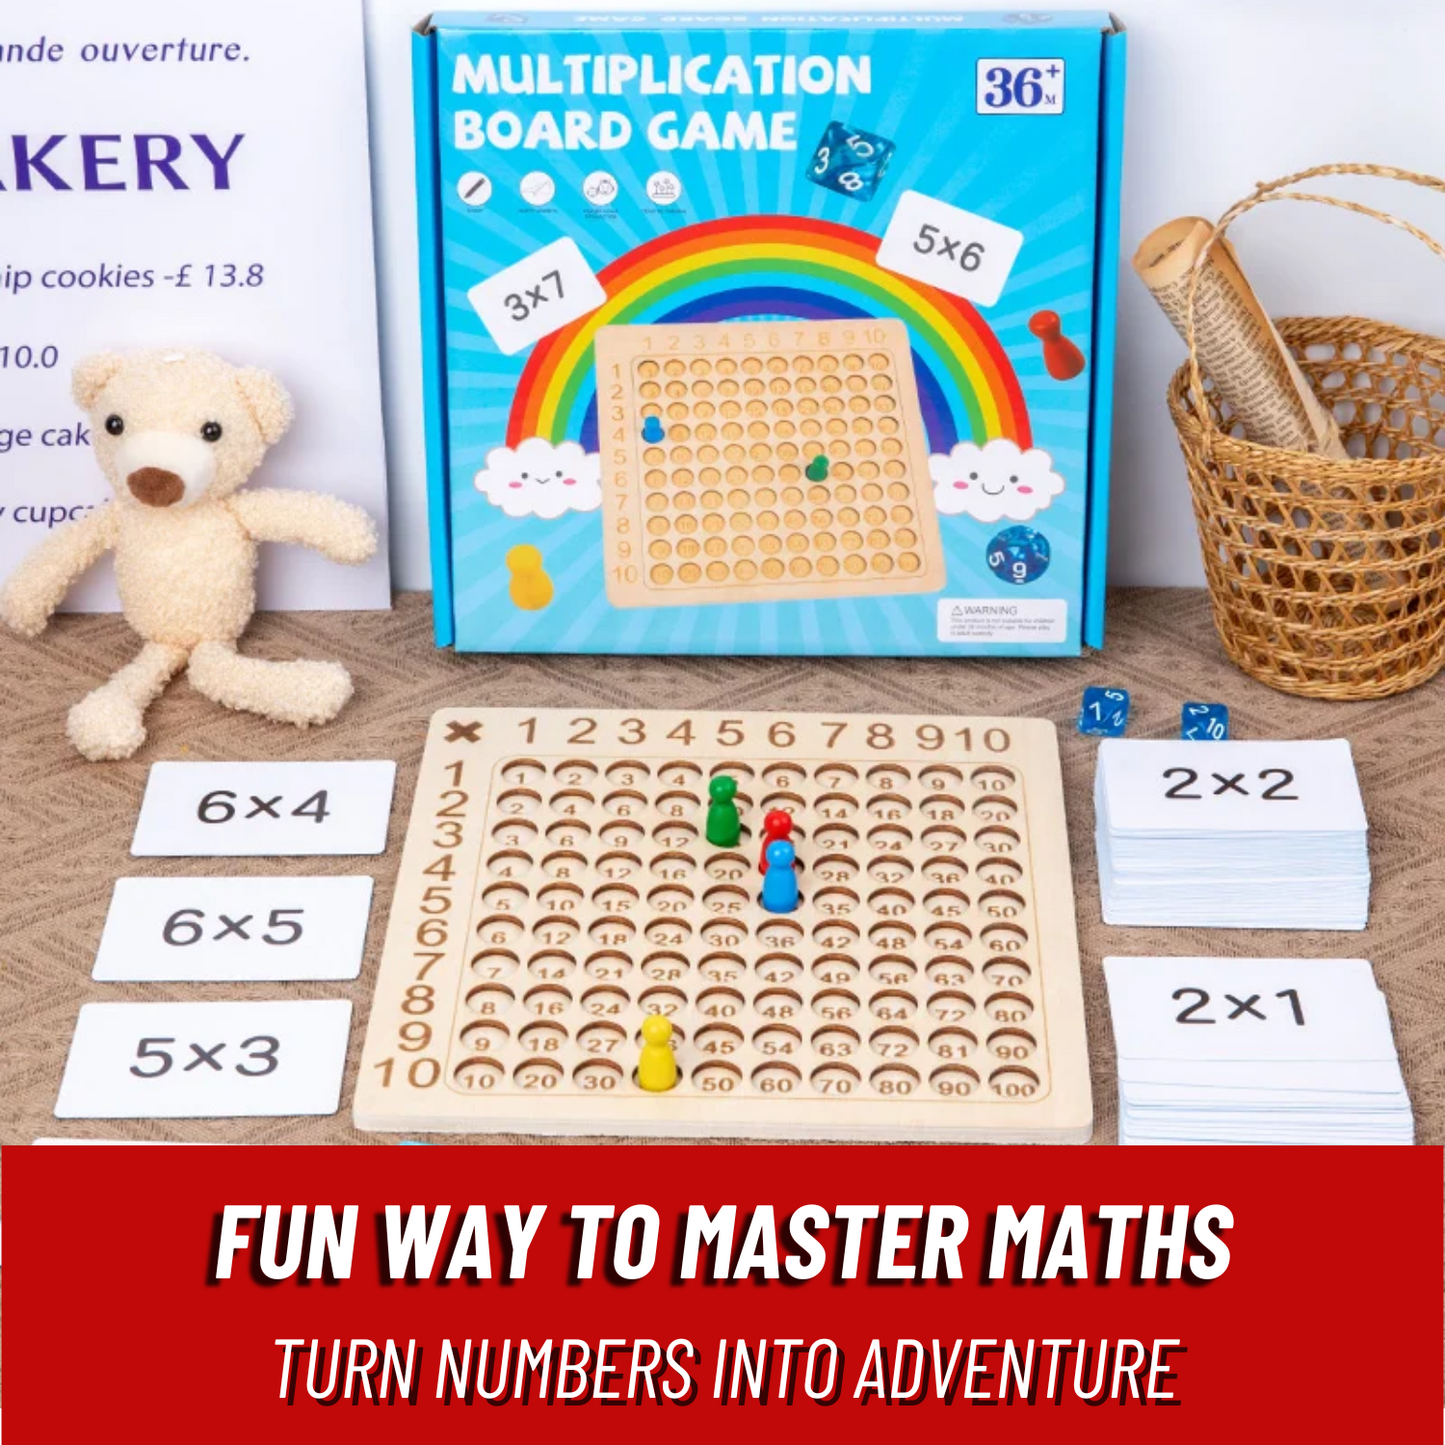 MathMaster™ Board Game